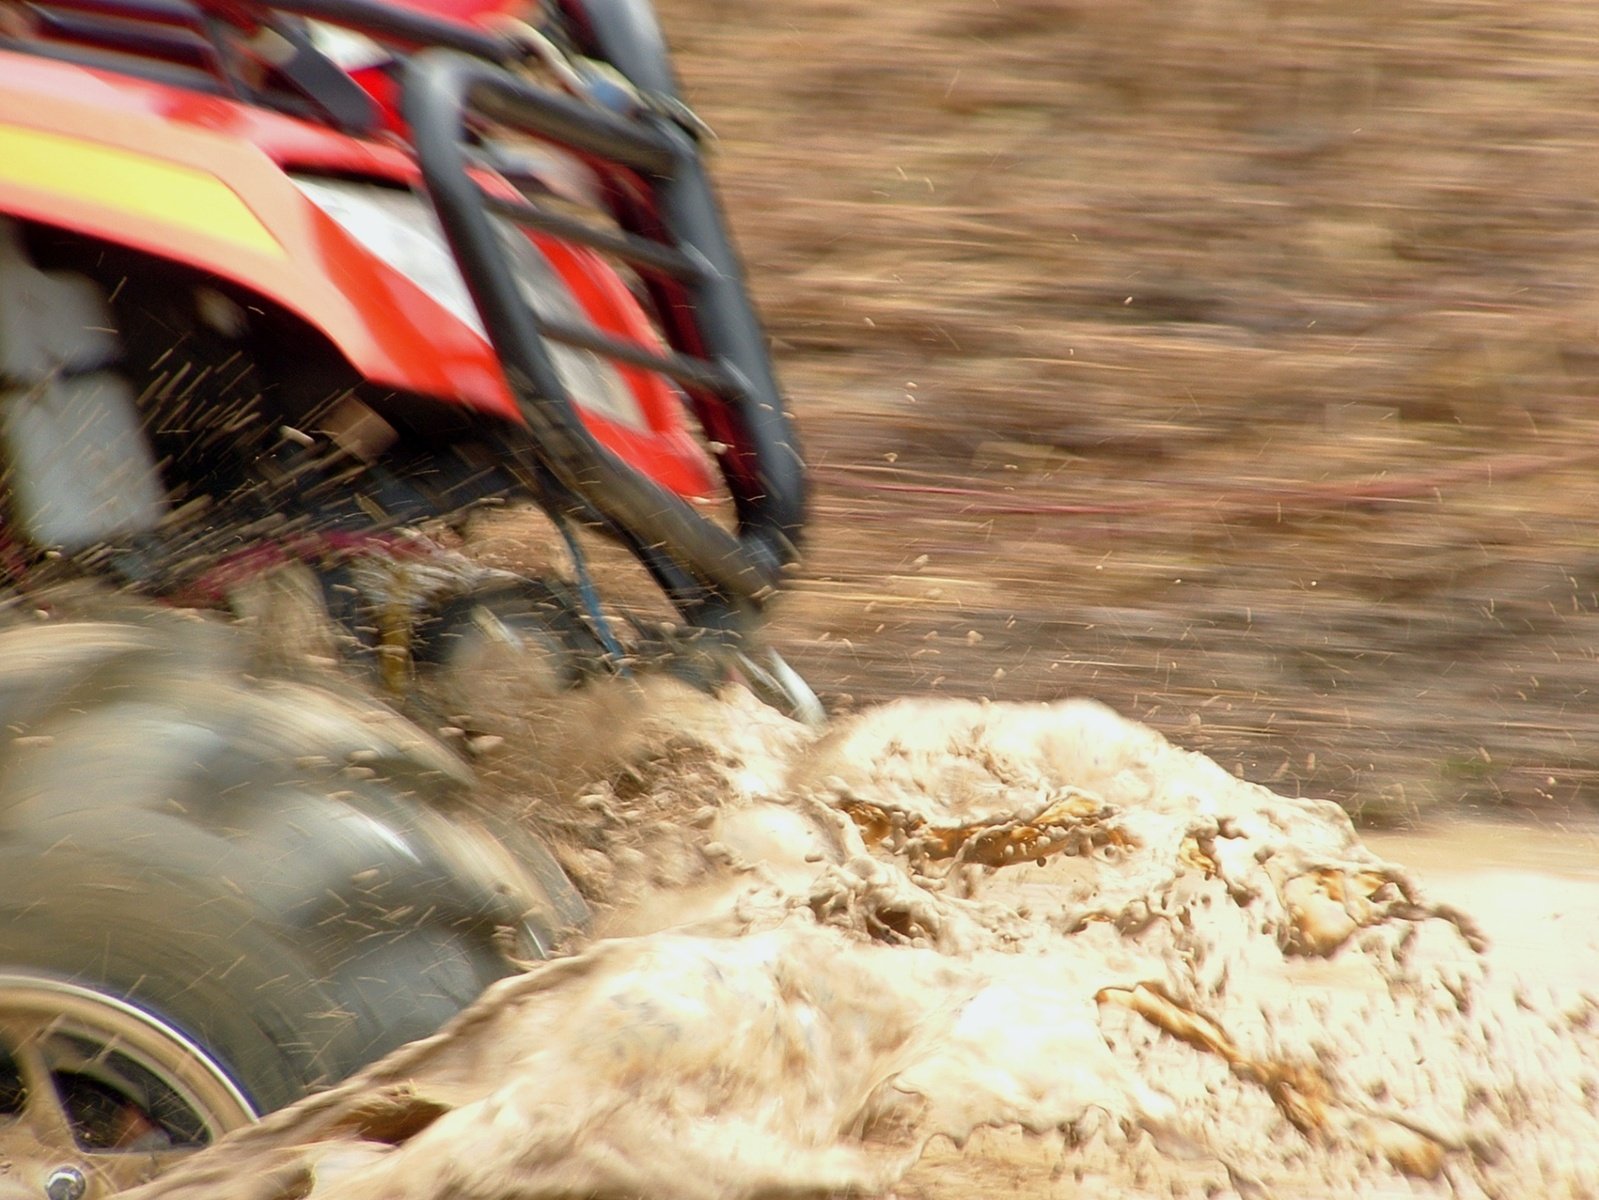 a red four wheeler drives through mud